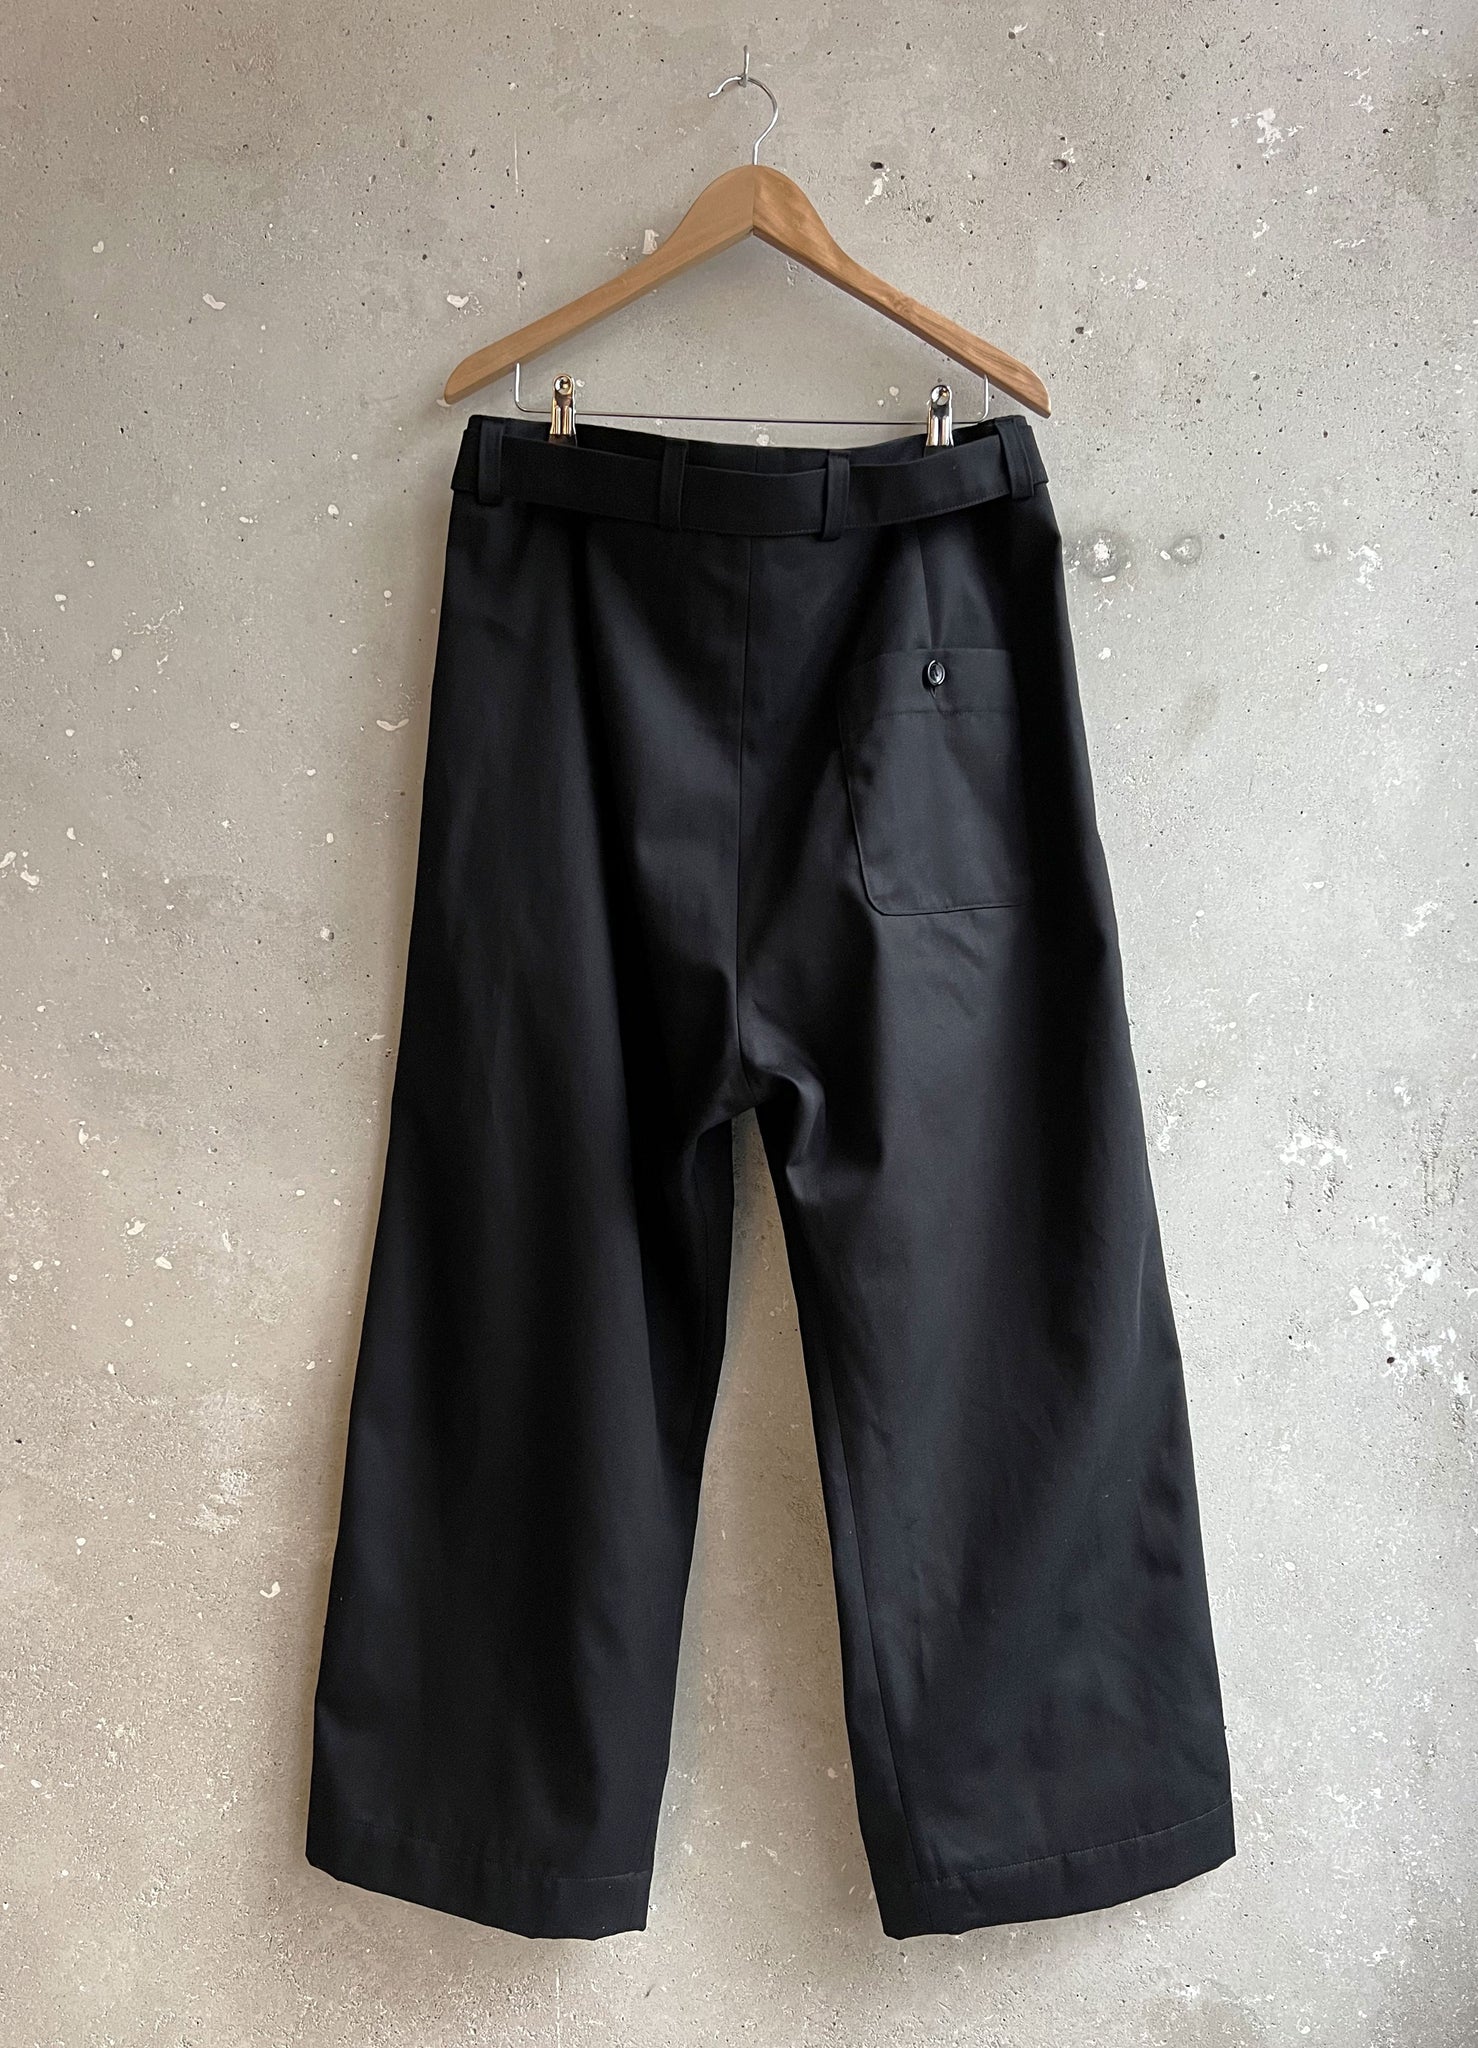 Paris trousers black